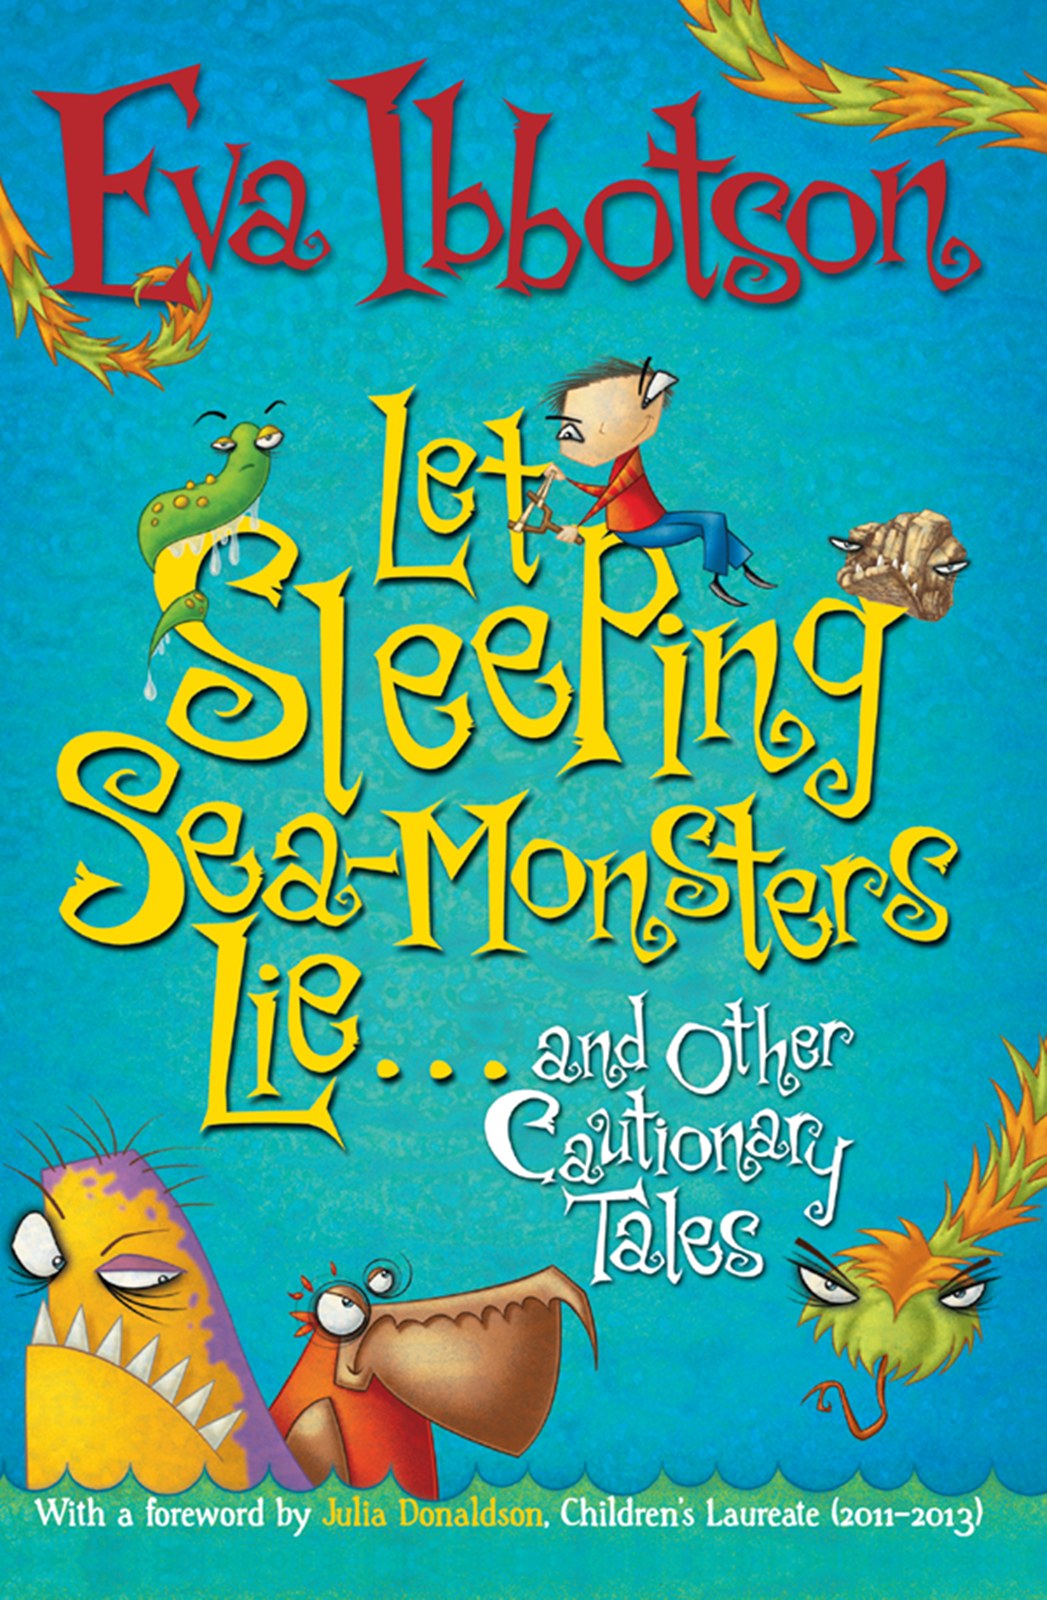 Let Sleeping Sea-Monsters Lie by Eva Ibbotson